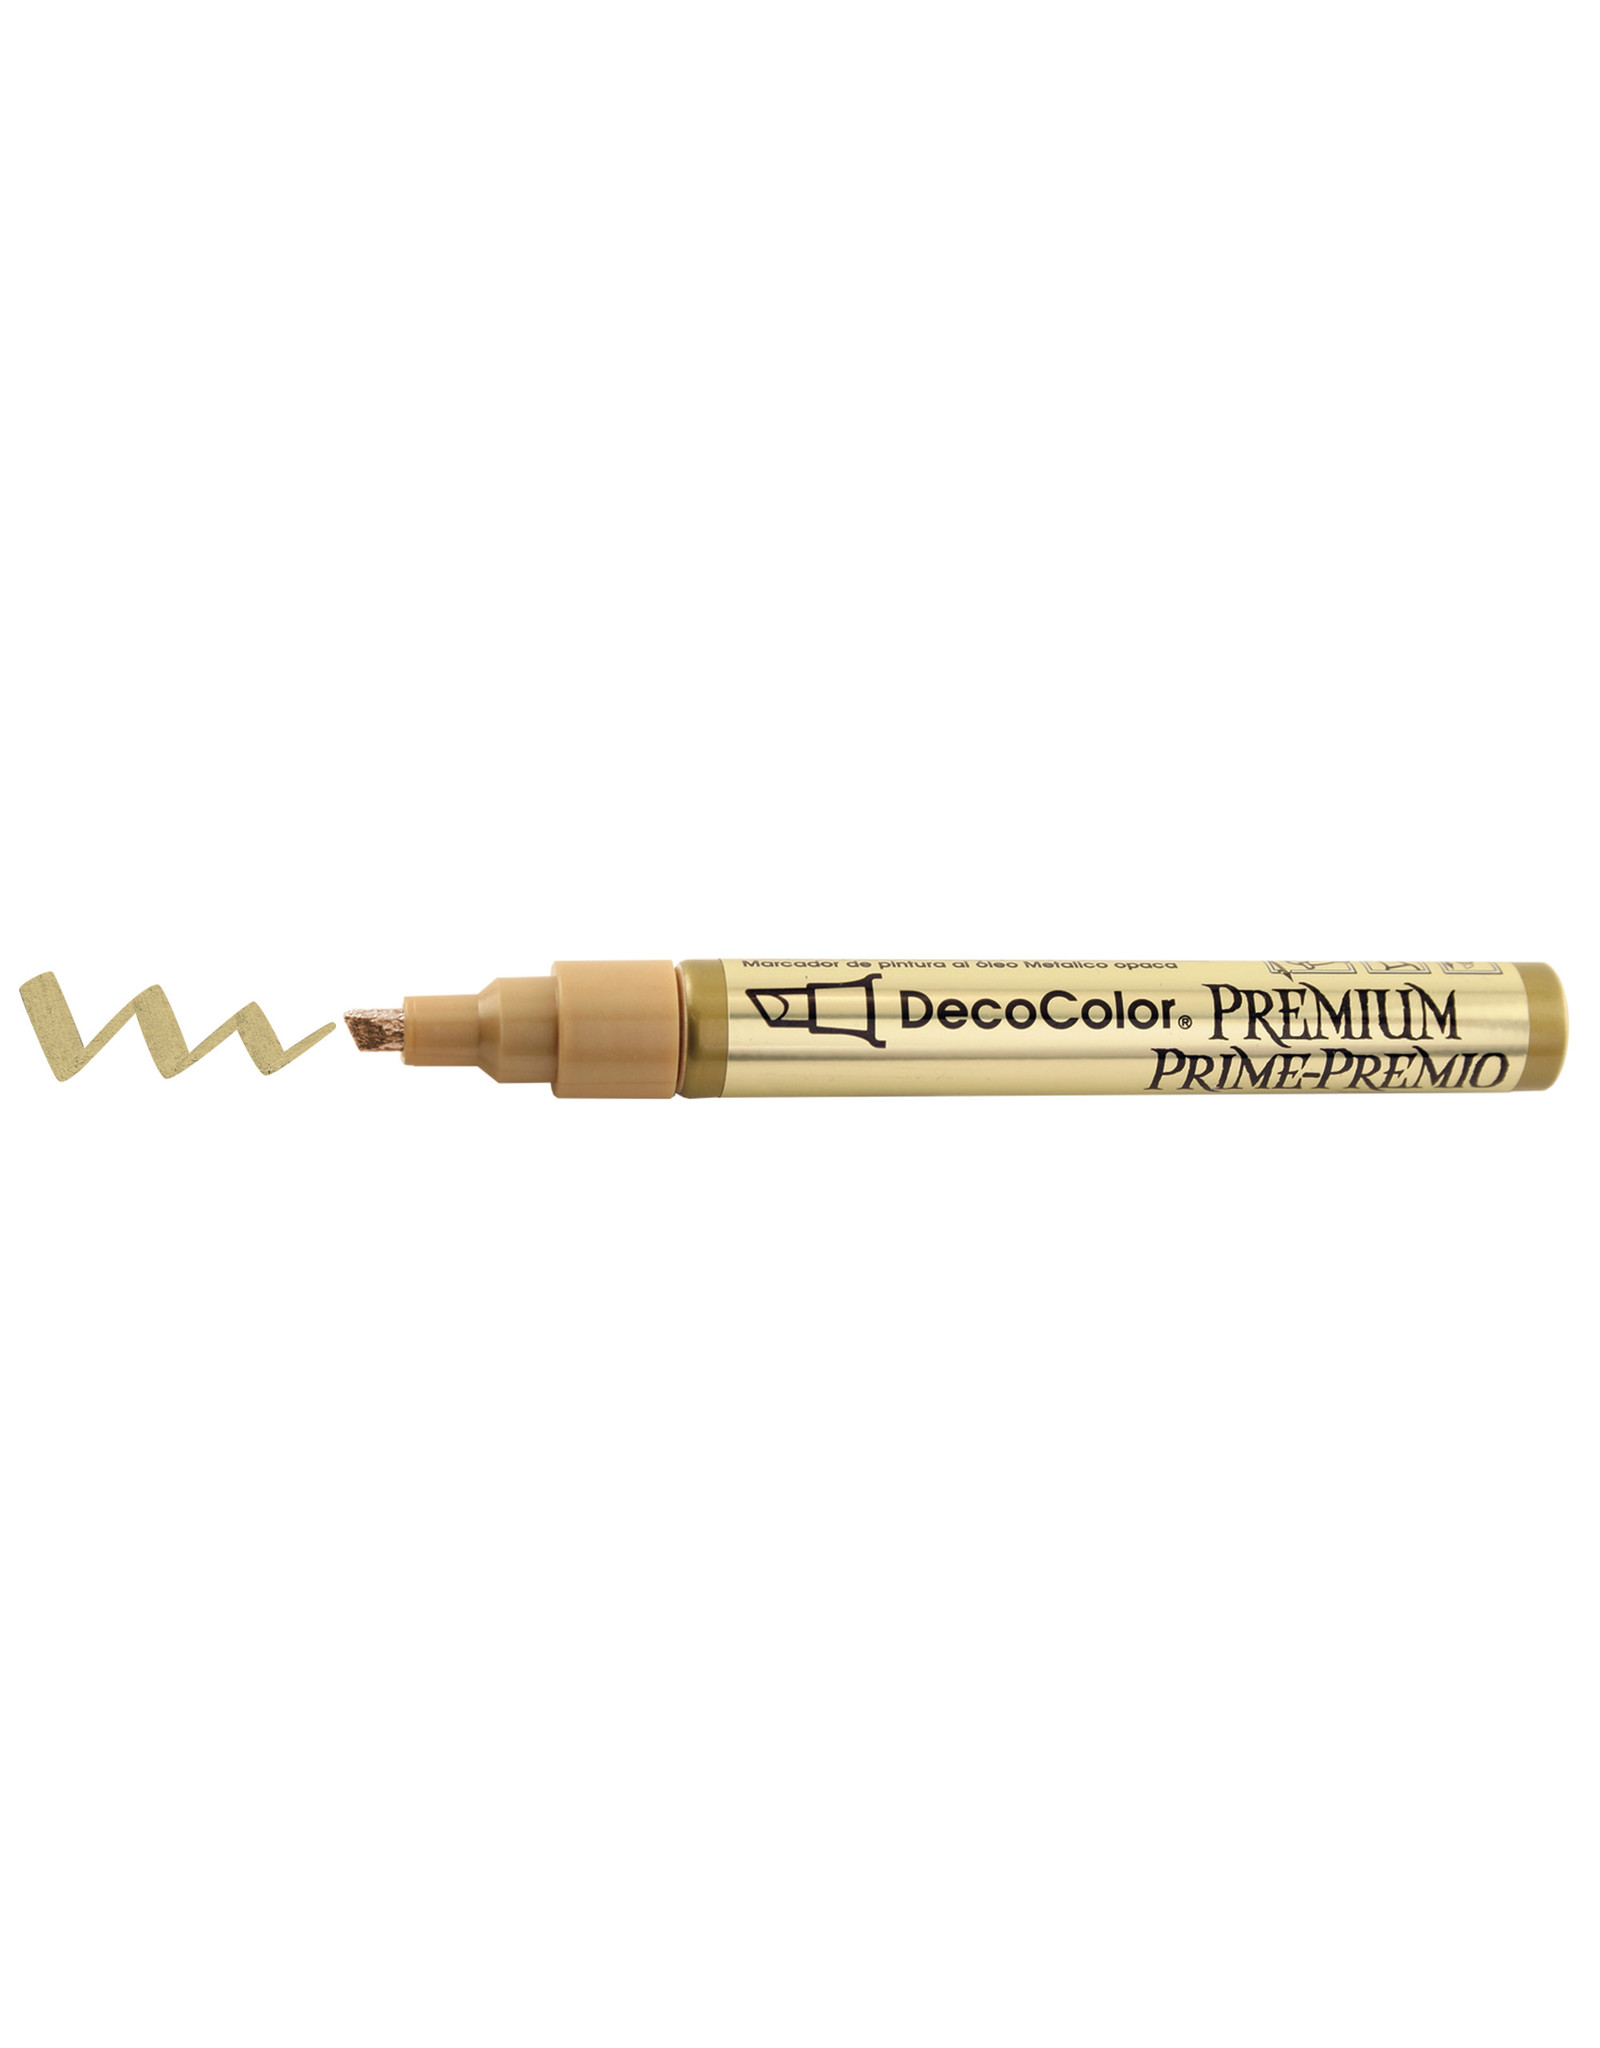 Uchida Uchida DecoColor Premium Gold Chisel Tip